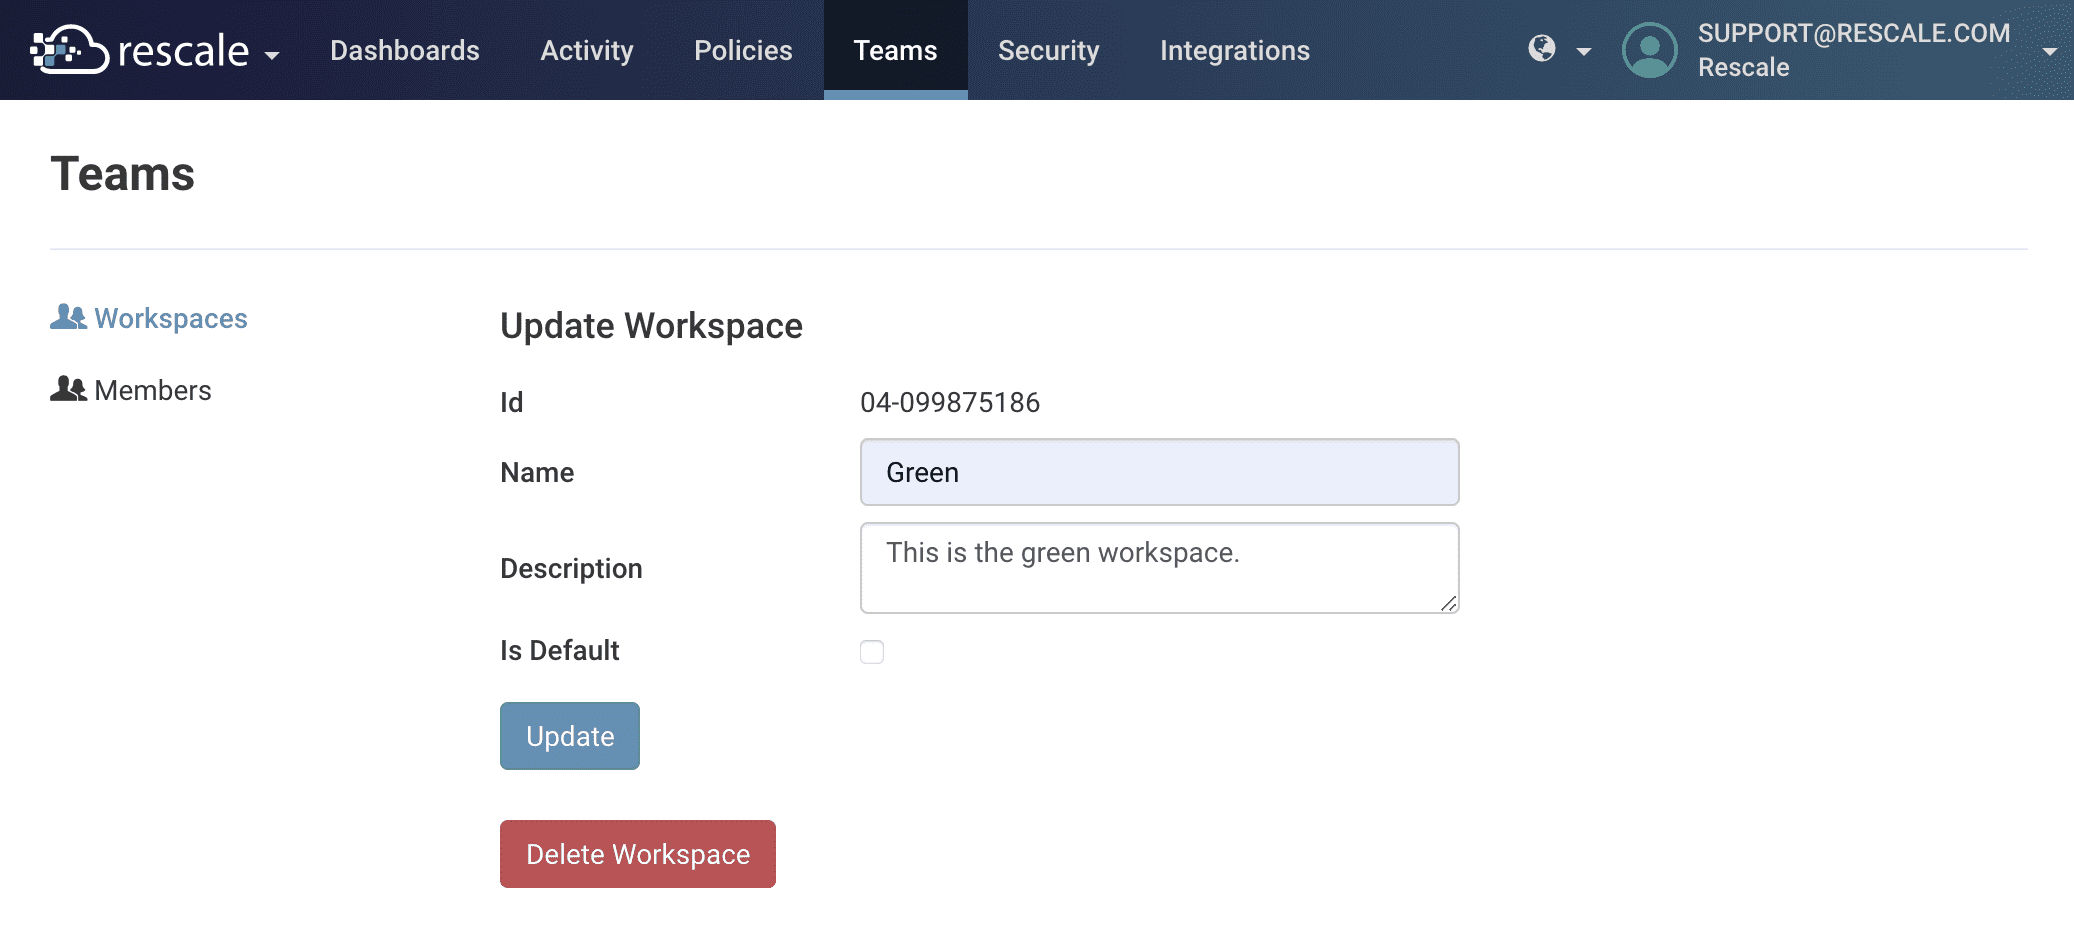 Update Workspace